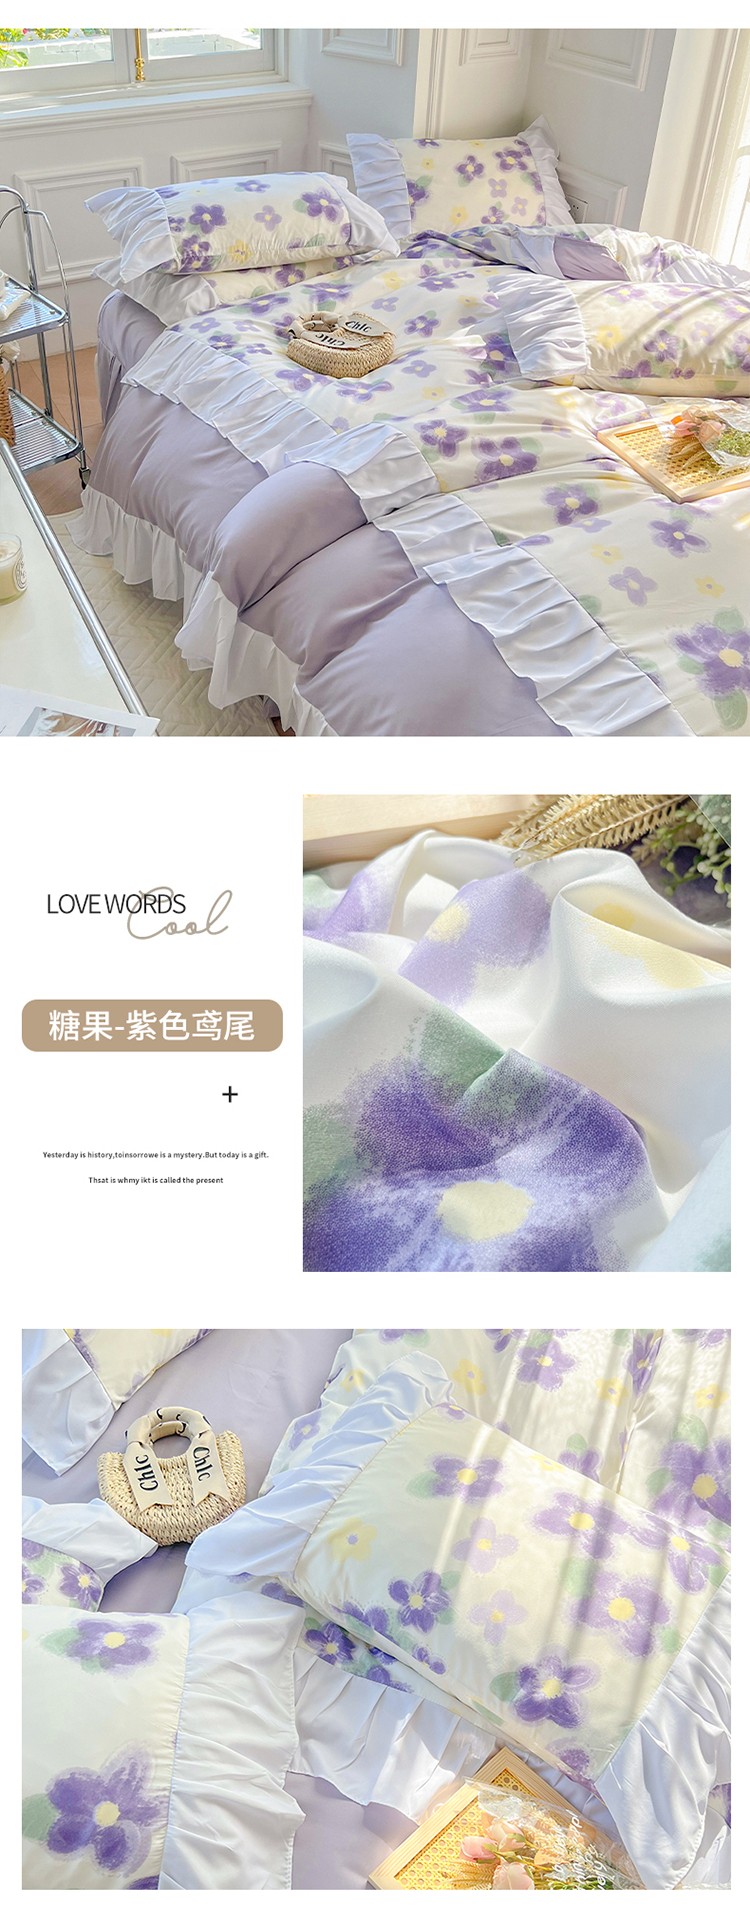 糖果-紫色鸢尾.jpg